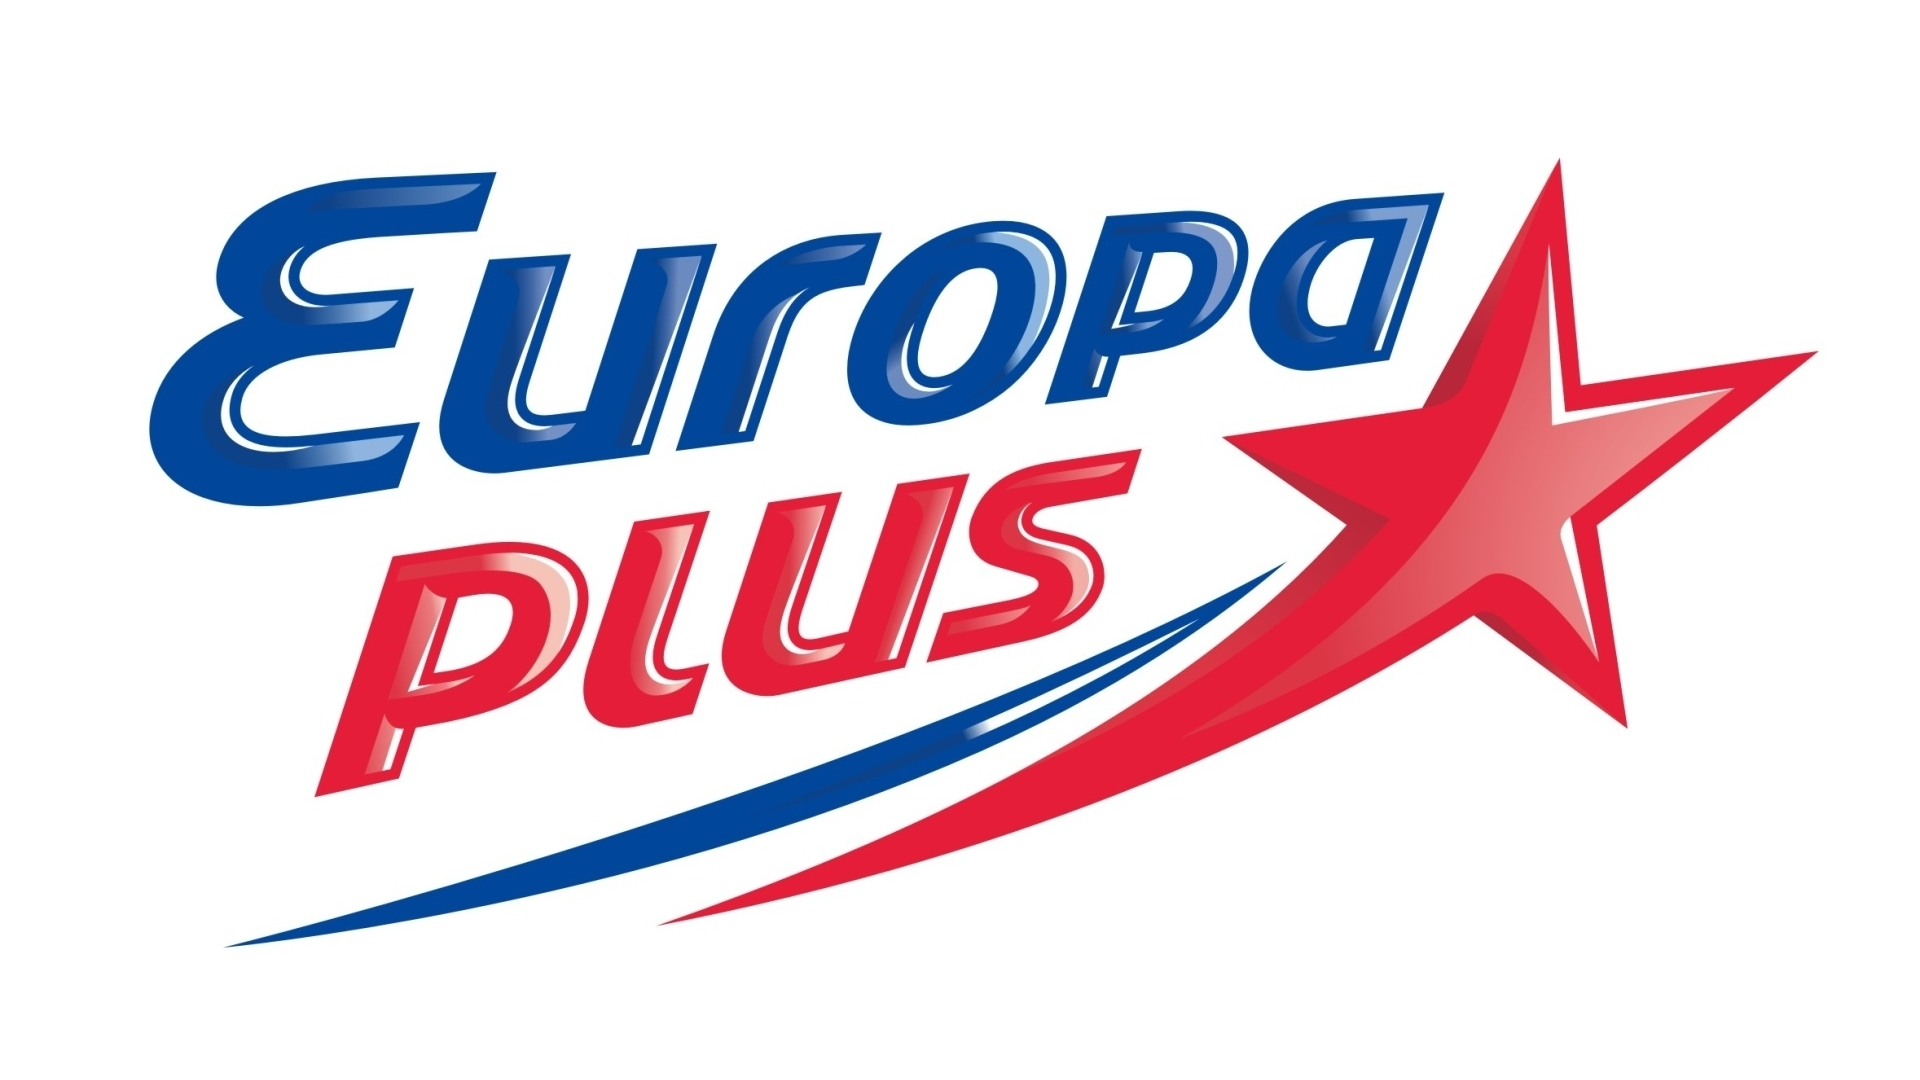 Телефон радио европа плюс. Европа плюс логотип 1990. Европа Лис. Радио Европа плюс. Логотипы радиостанций.